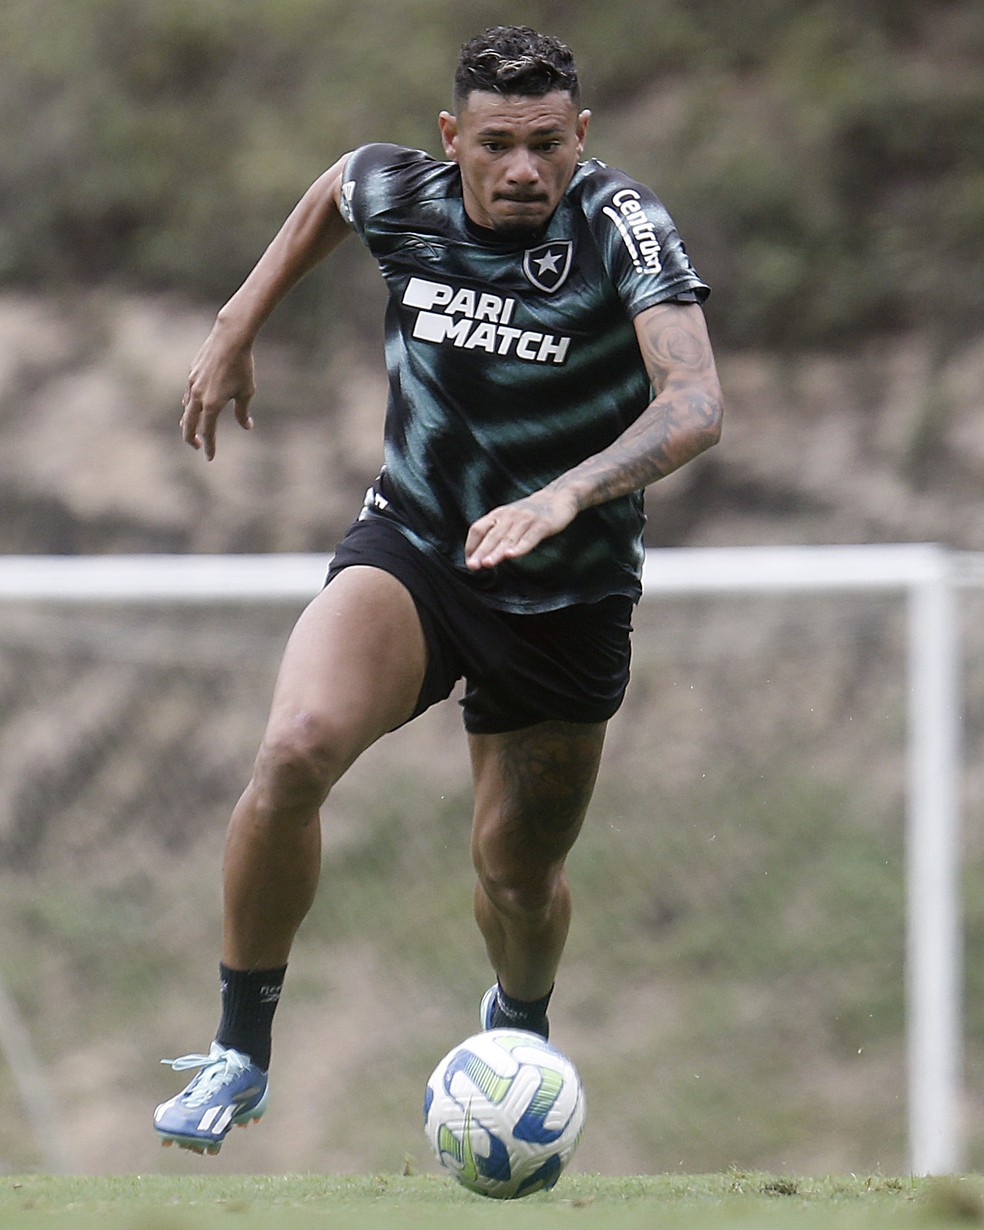 Brasileirão: com gols de Tiquinho Soares, Botafogo bate Fortaleza e segue  líder